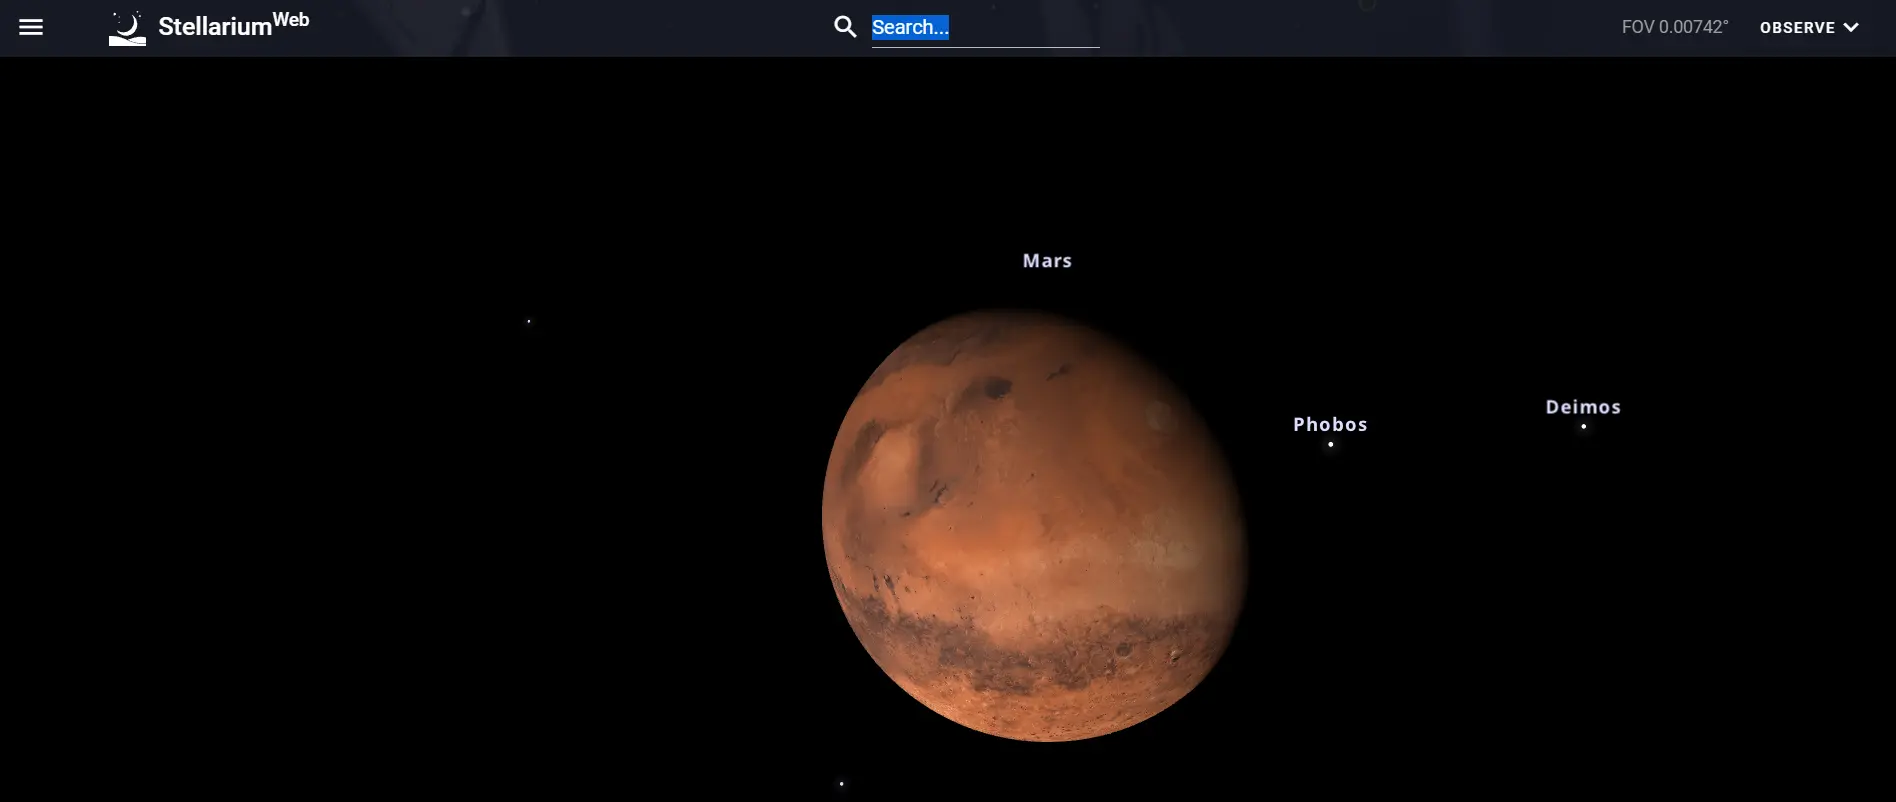 стелларіум онлайн - Фотографія Марсу в Stellarium